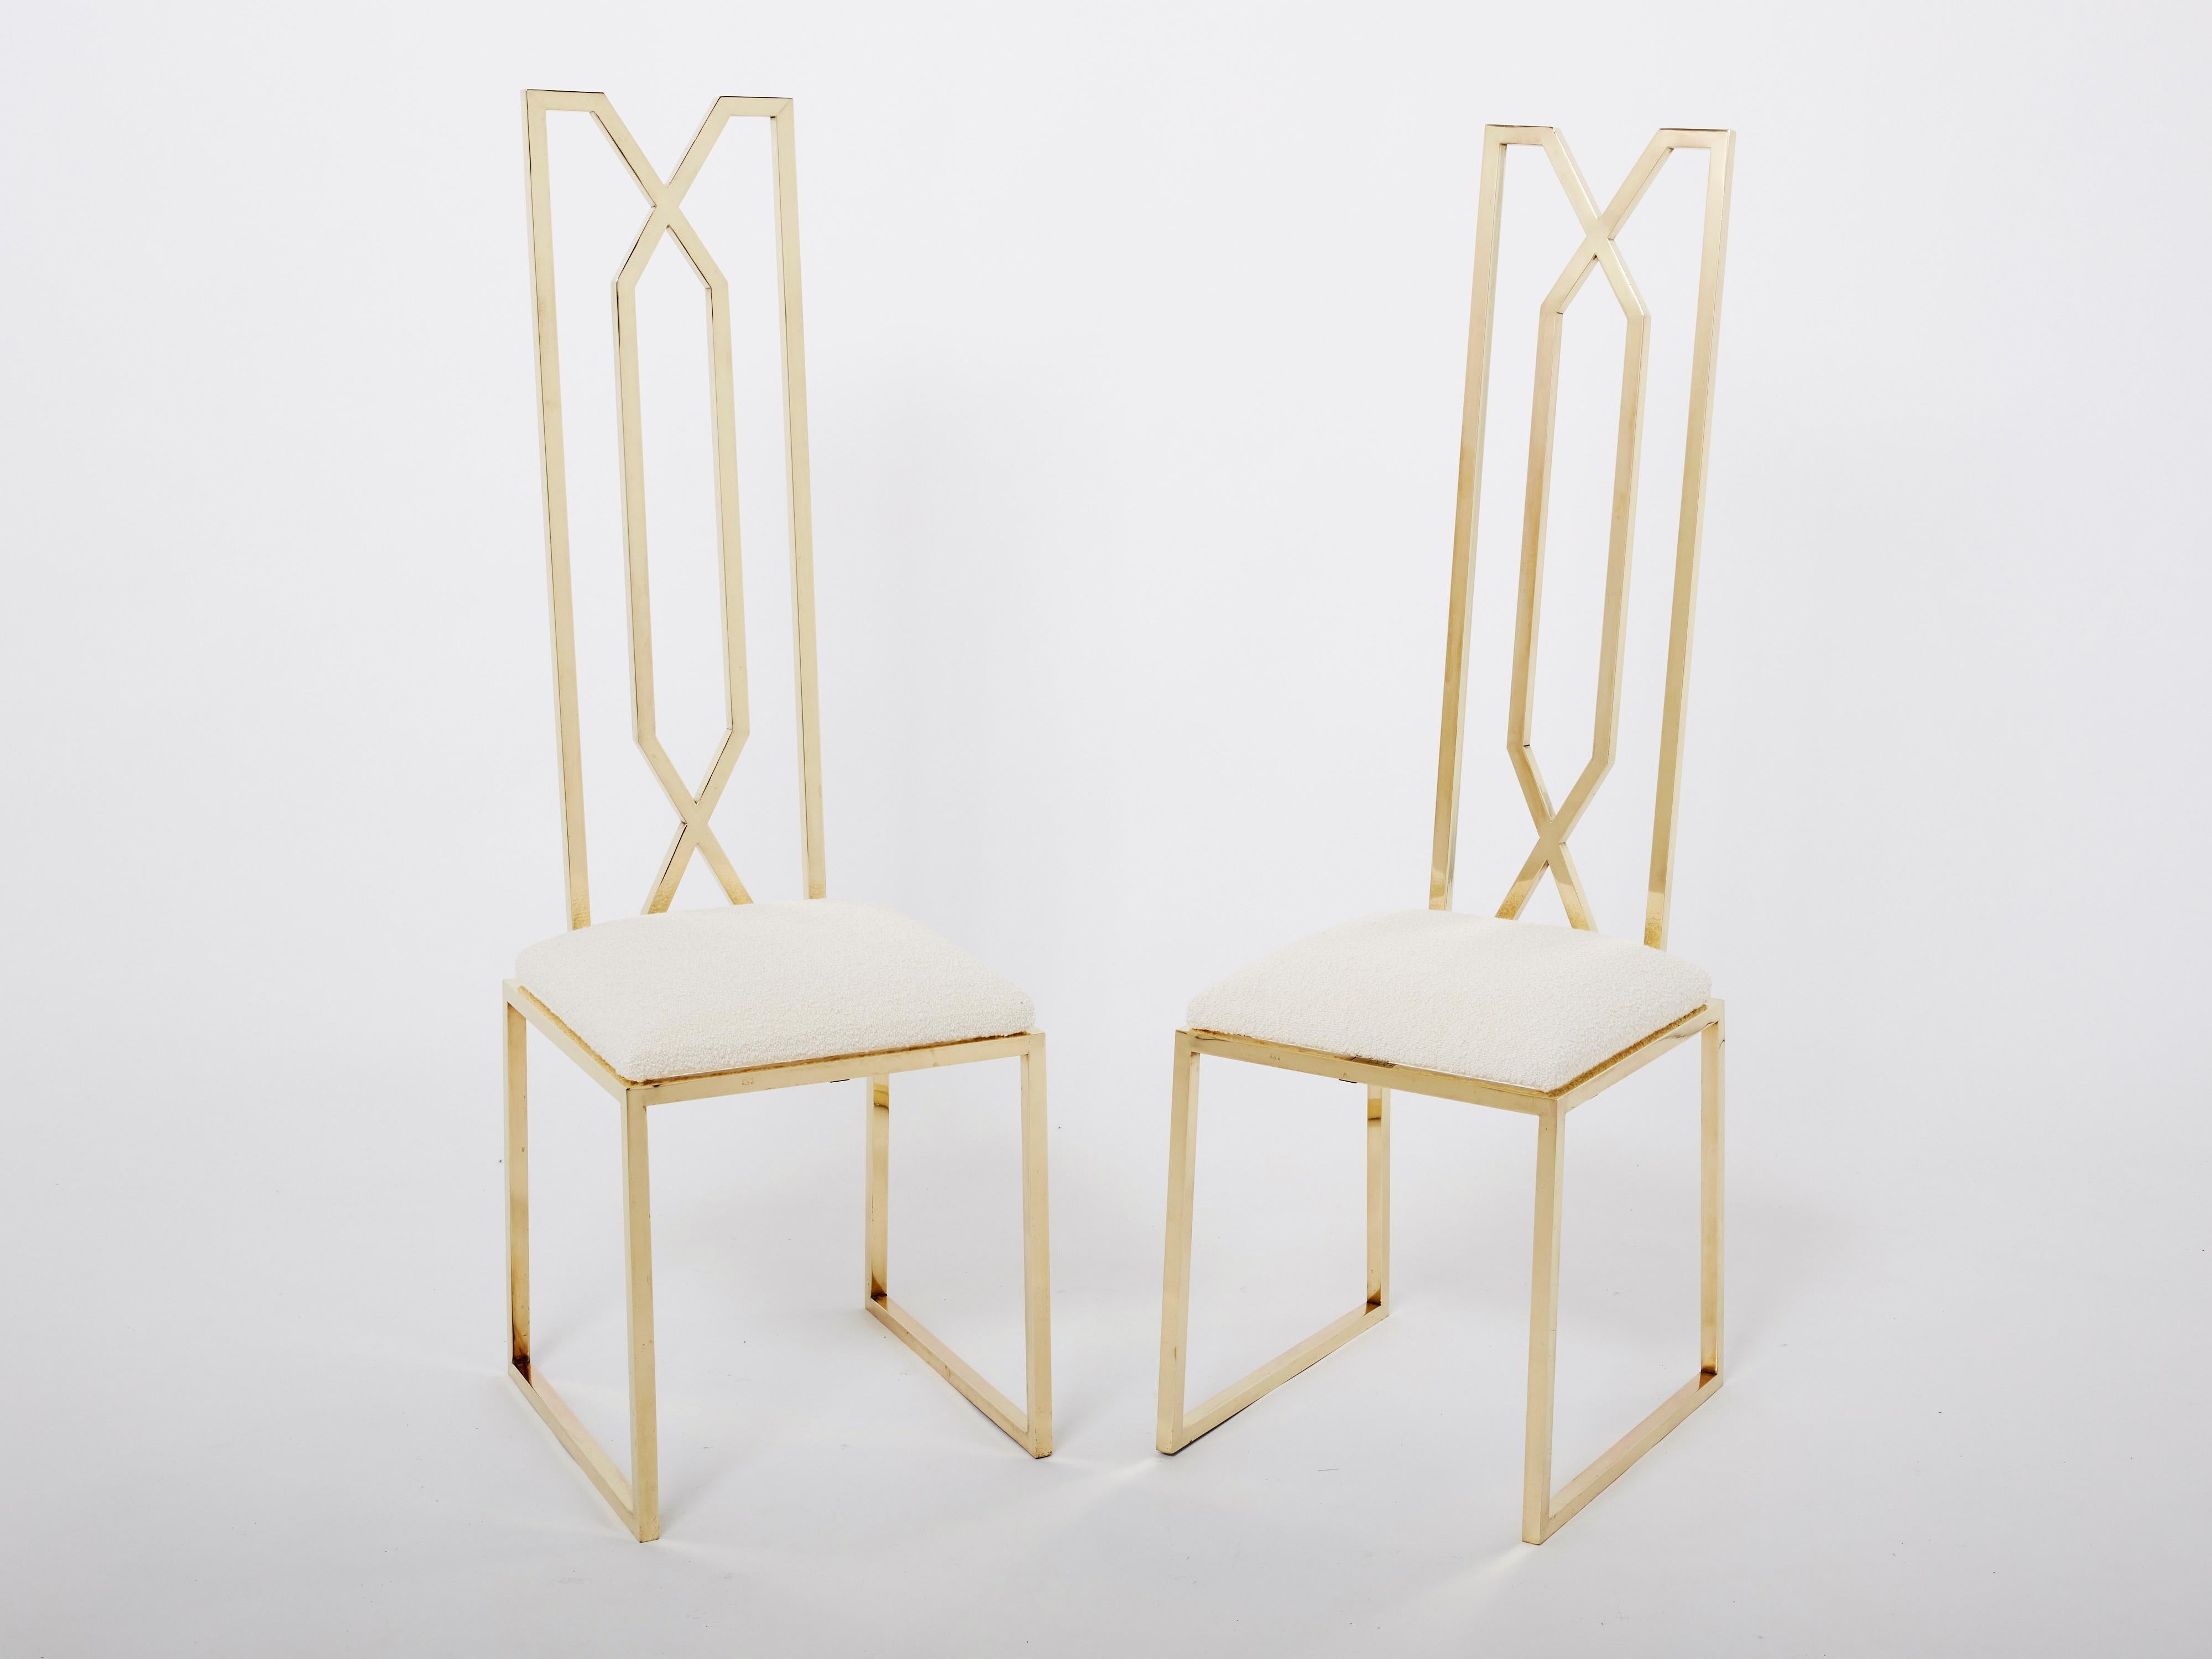 Der extravagante Geschmack des französischen Schauspielers und Designers Alain Delon zeigt sich in diesem Paar französischer Stühle aus der Mitte des Jahrhunderts. Sie wurden Mitte der 1970er Jahre von Jean Charles herausgegeben und sind definitiv